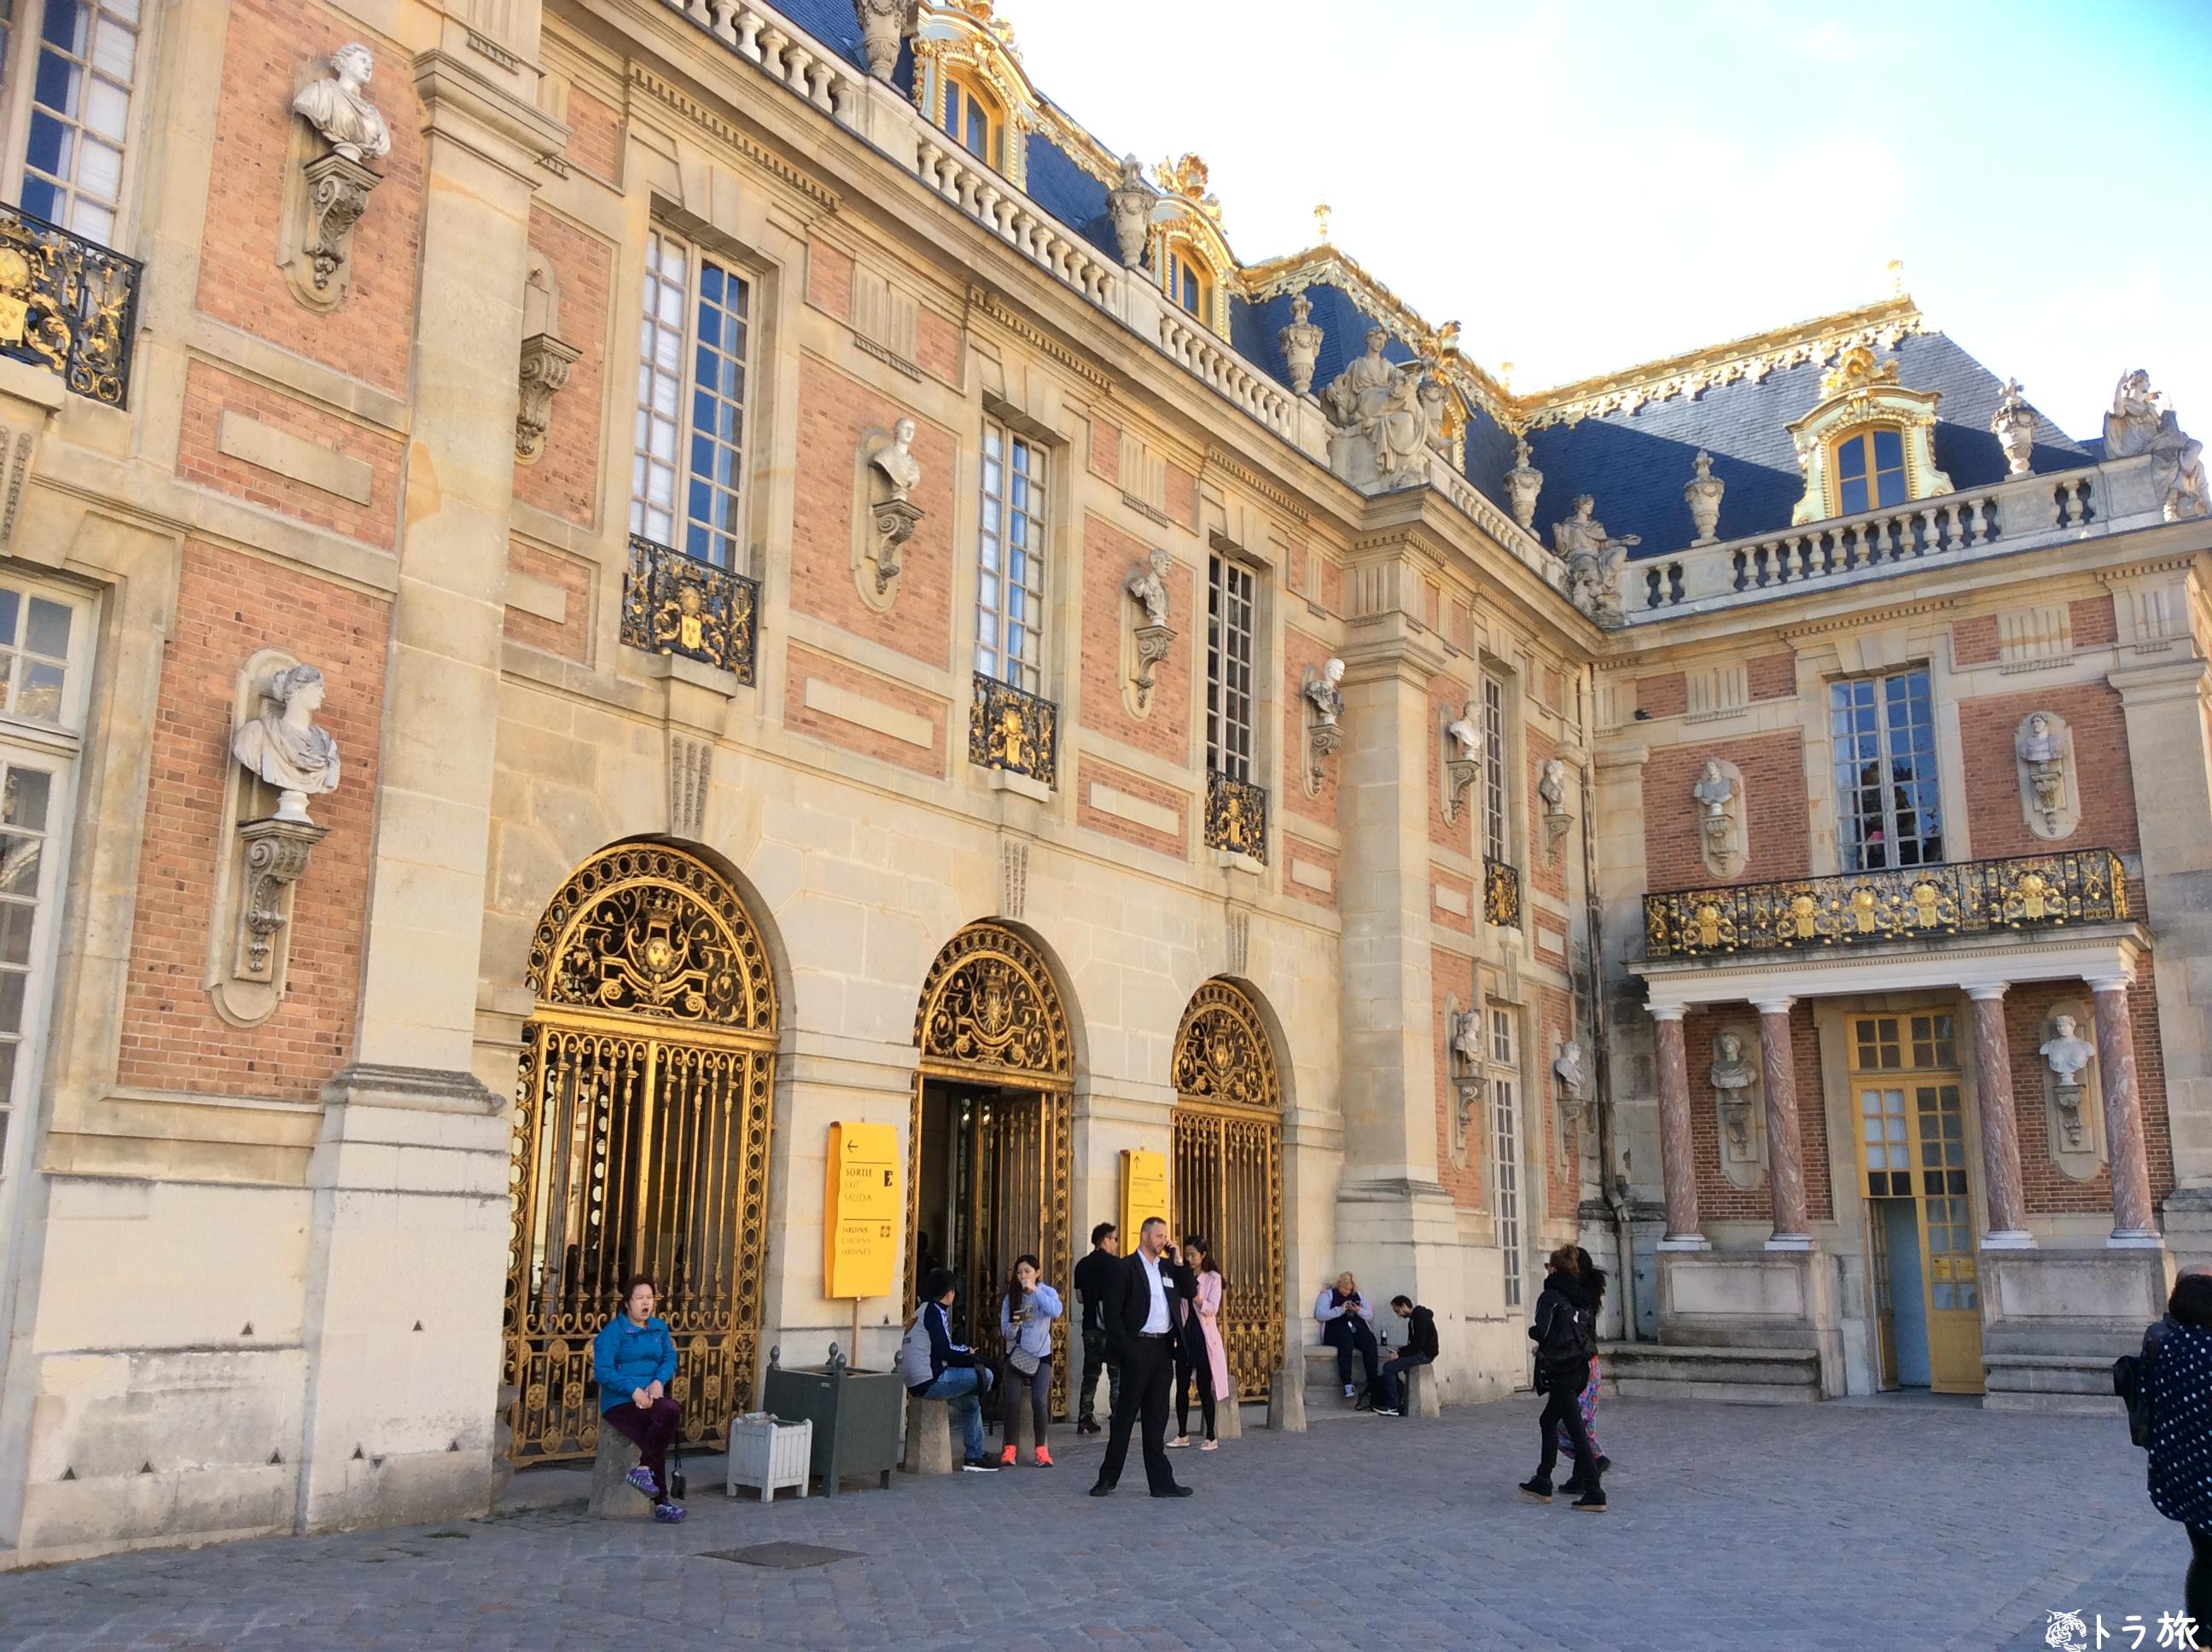 絢爛豪華なヴェルサイユ宮殿の内部を公開